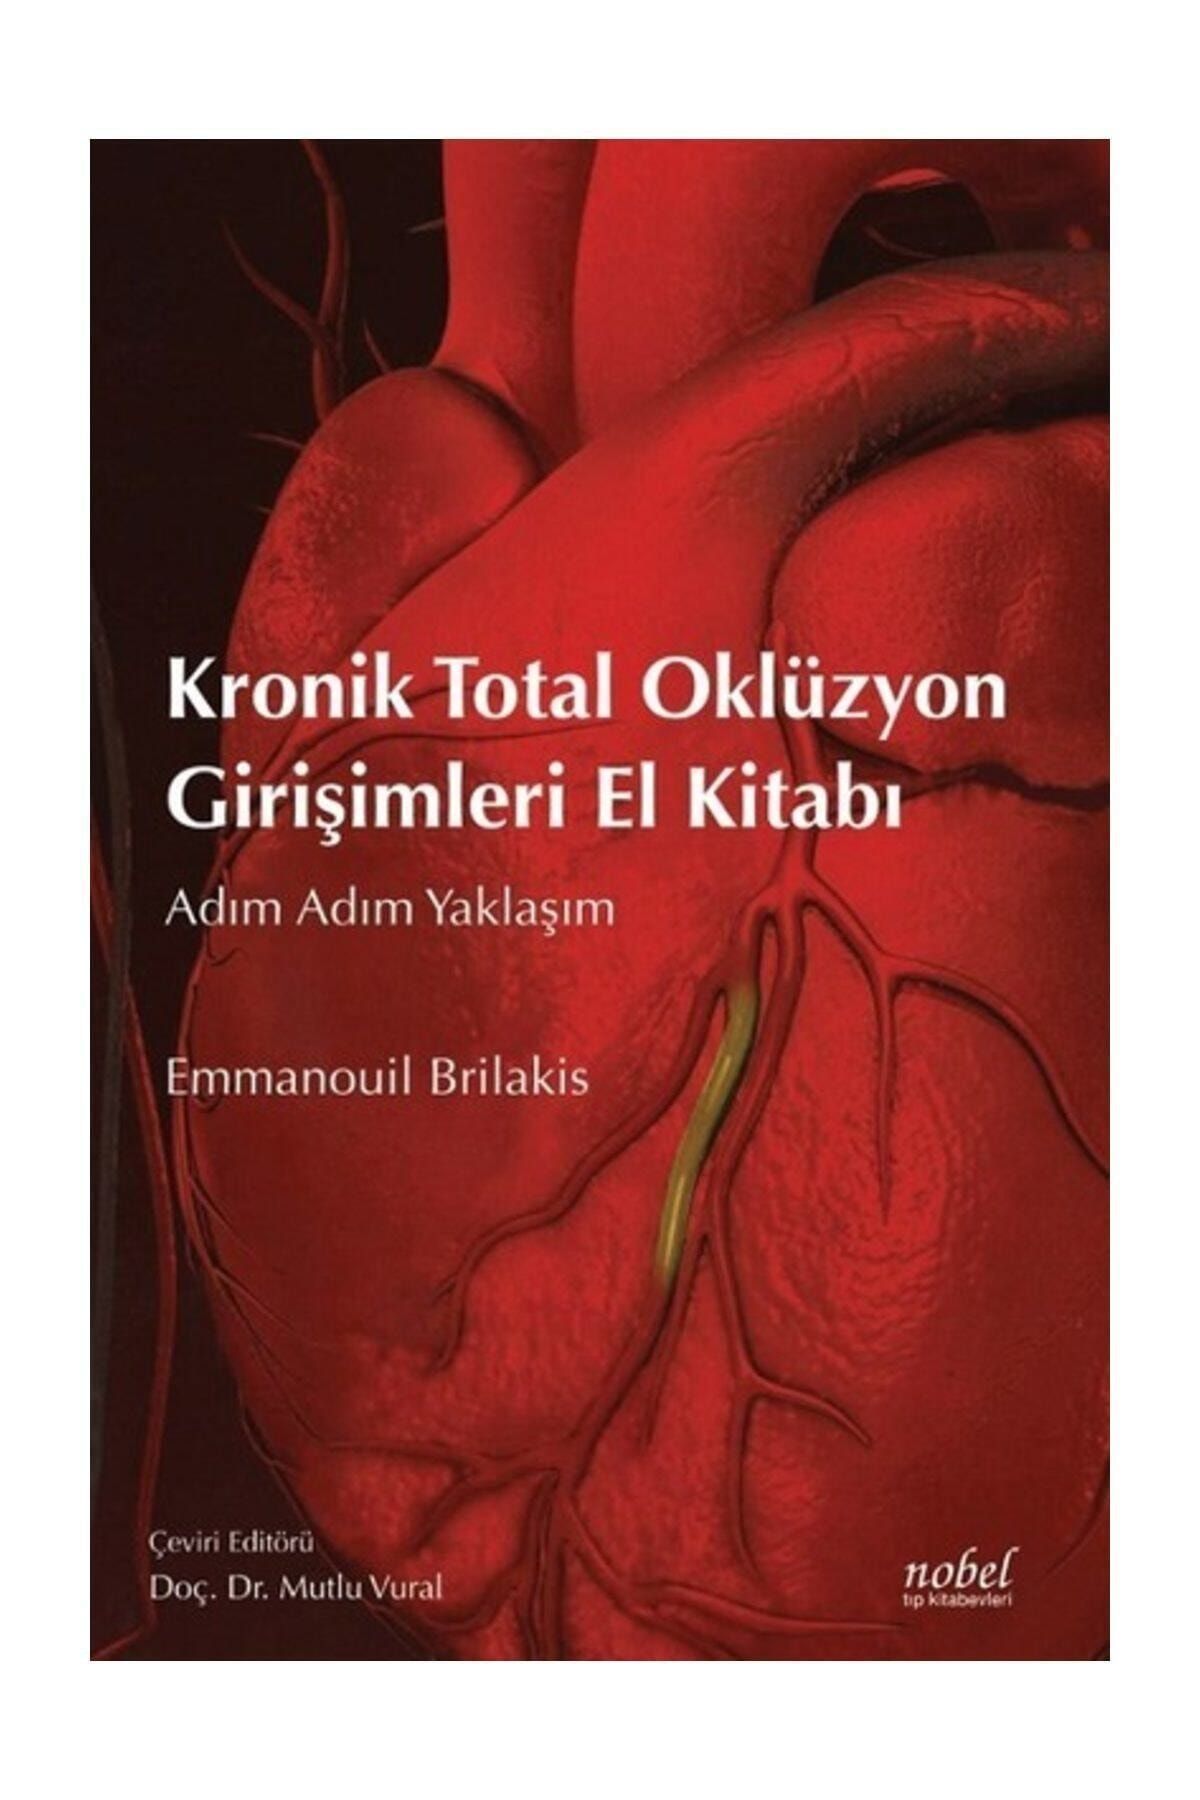 Nobel Tıp Kitabevi Kronik Total Oklüzyon Girişimleri El Kitabı